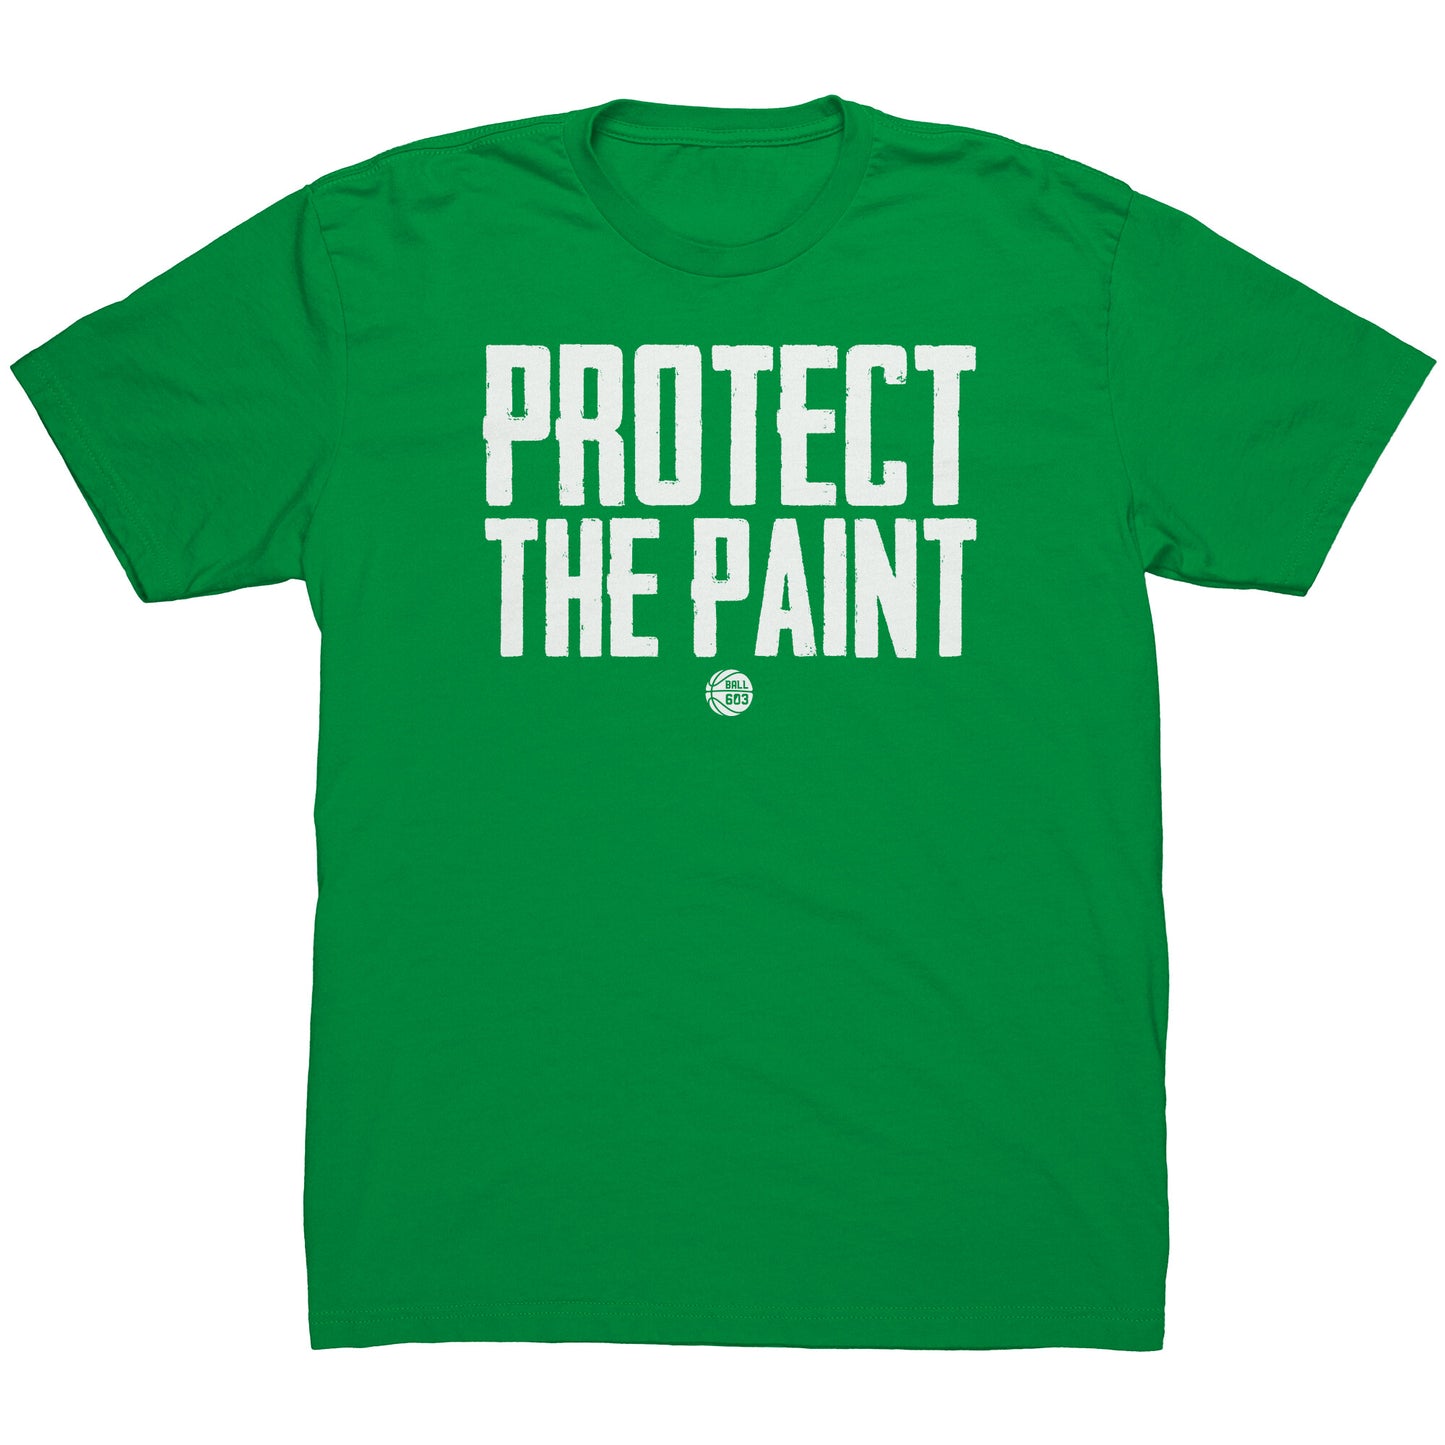 Protect the Paint T-Shirt (Men's Cut)